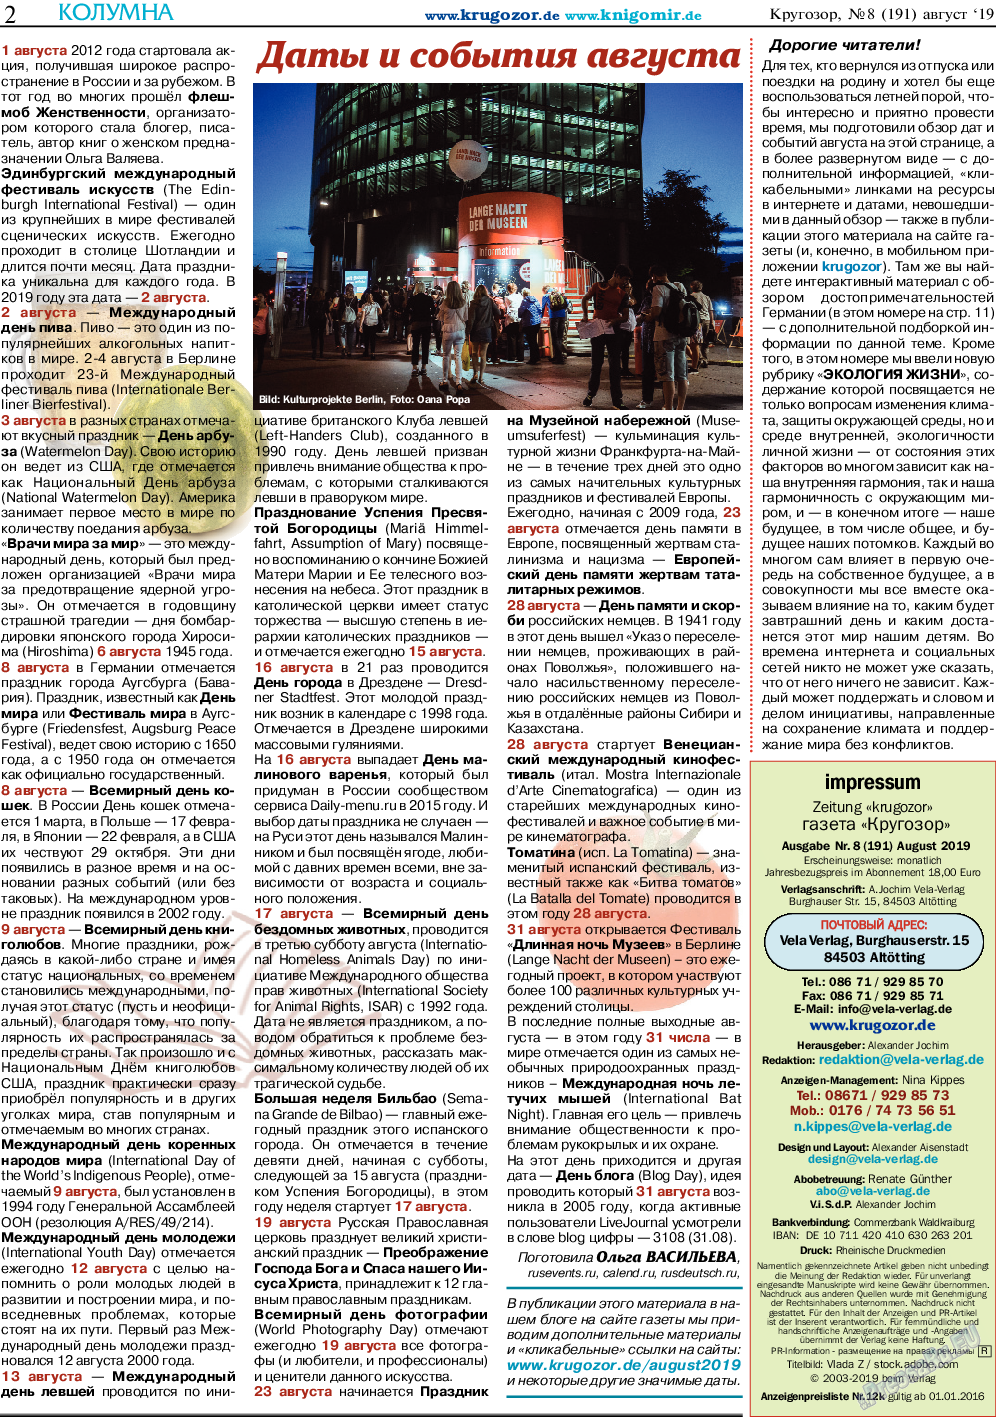 Кругозор (газета). 2019 год, номер 8, стр. 2